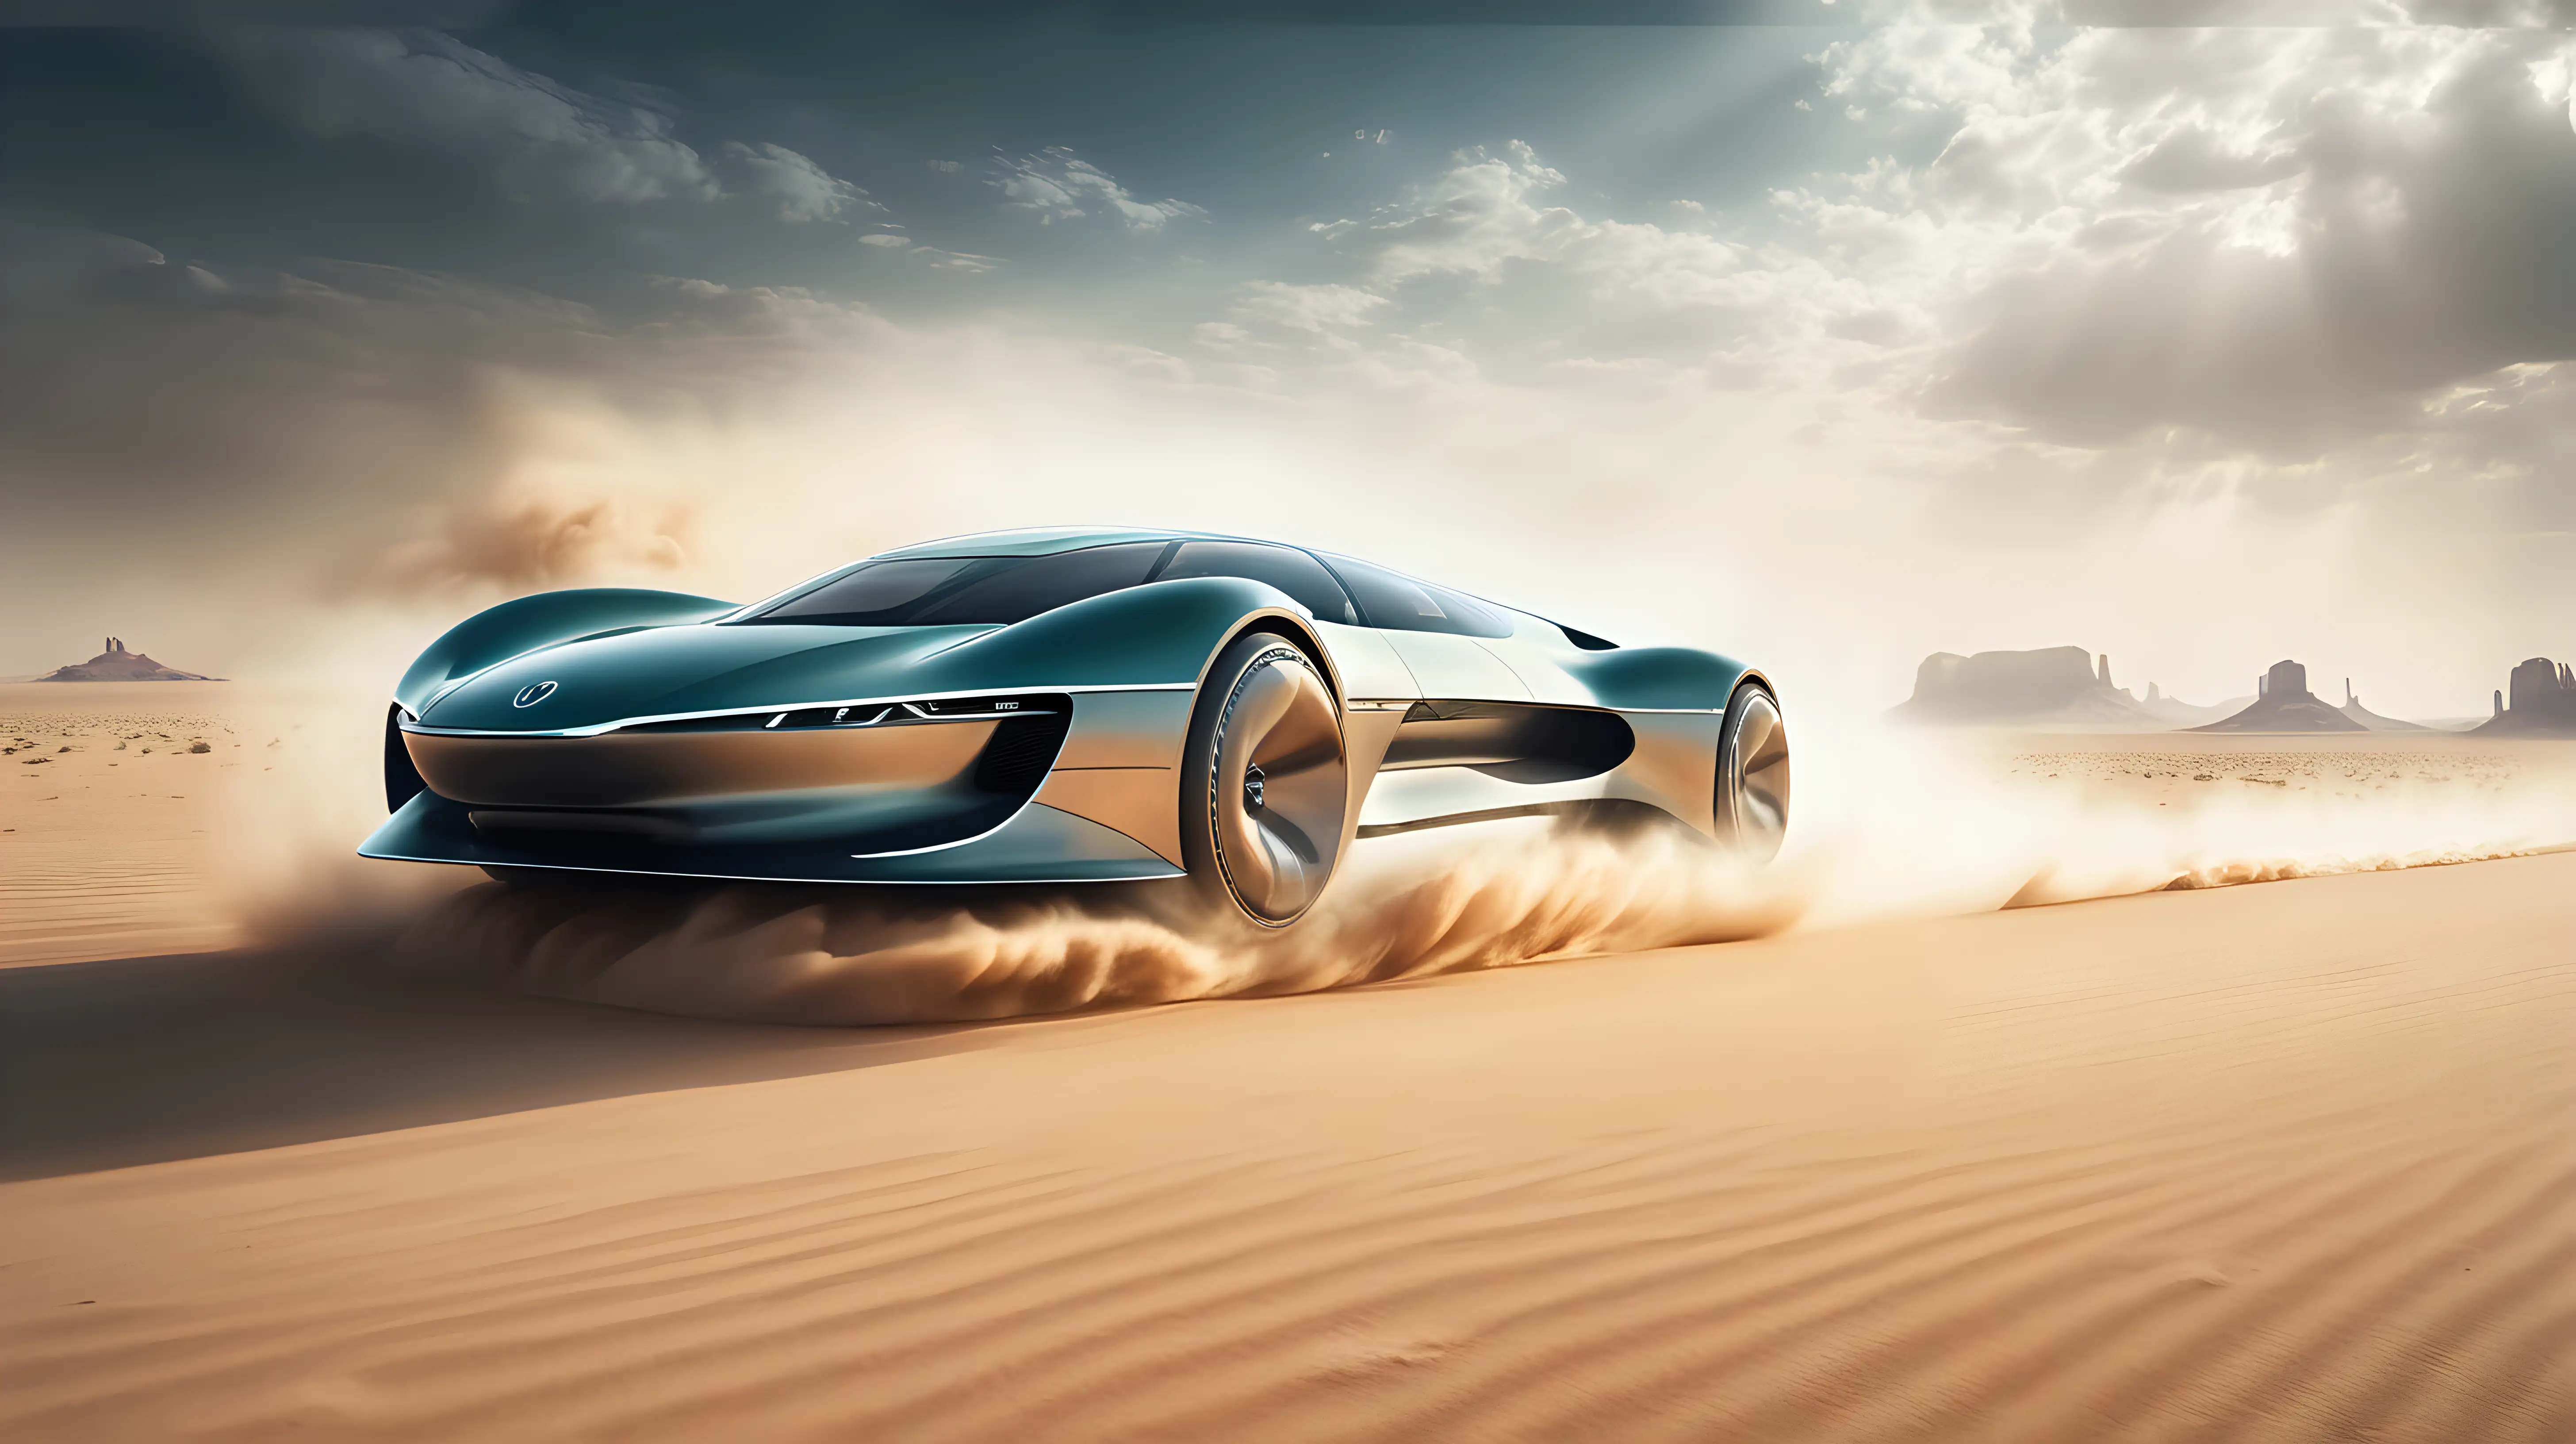 Futuristic Electric Car Racing Across Desert Landscape